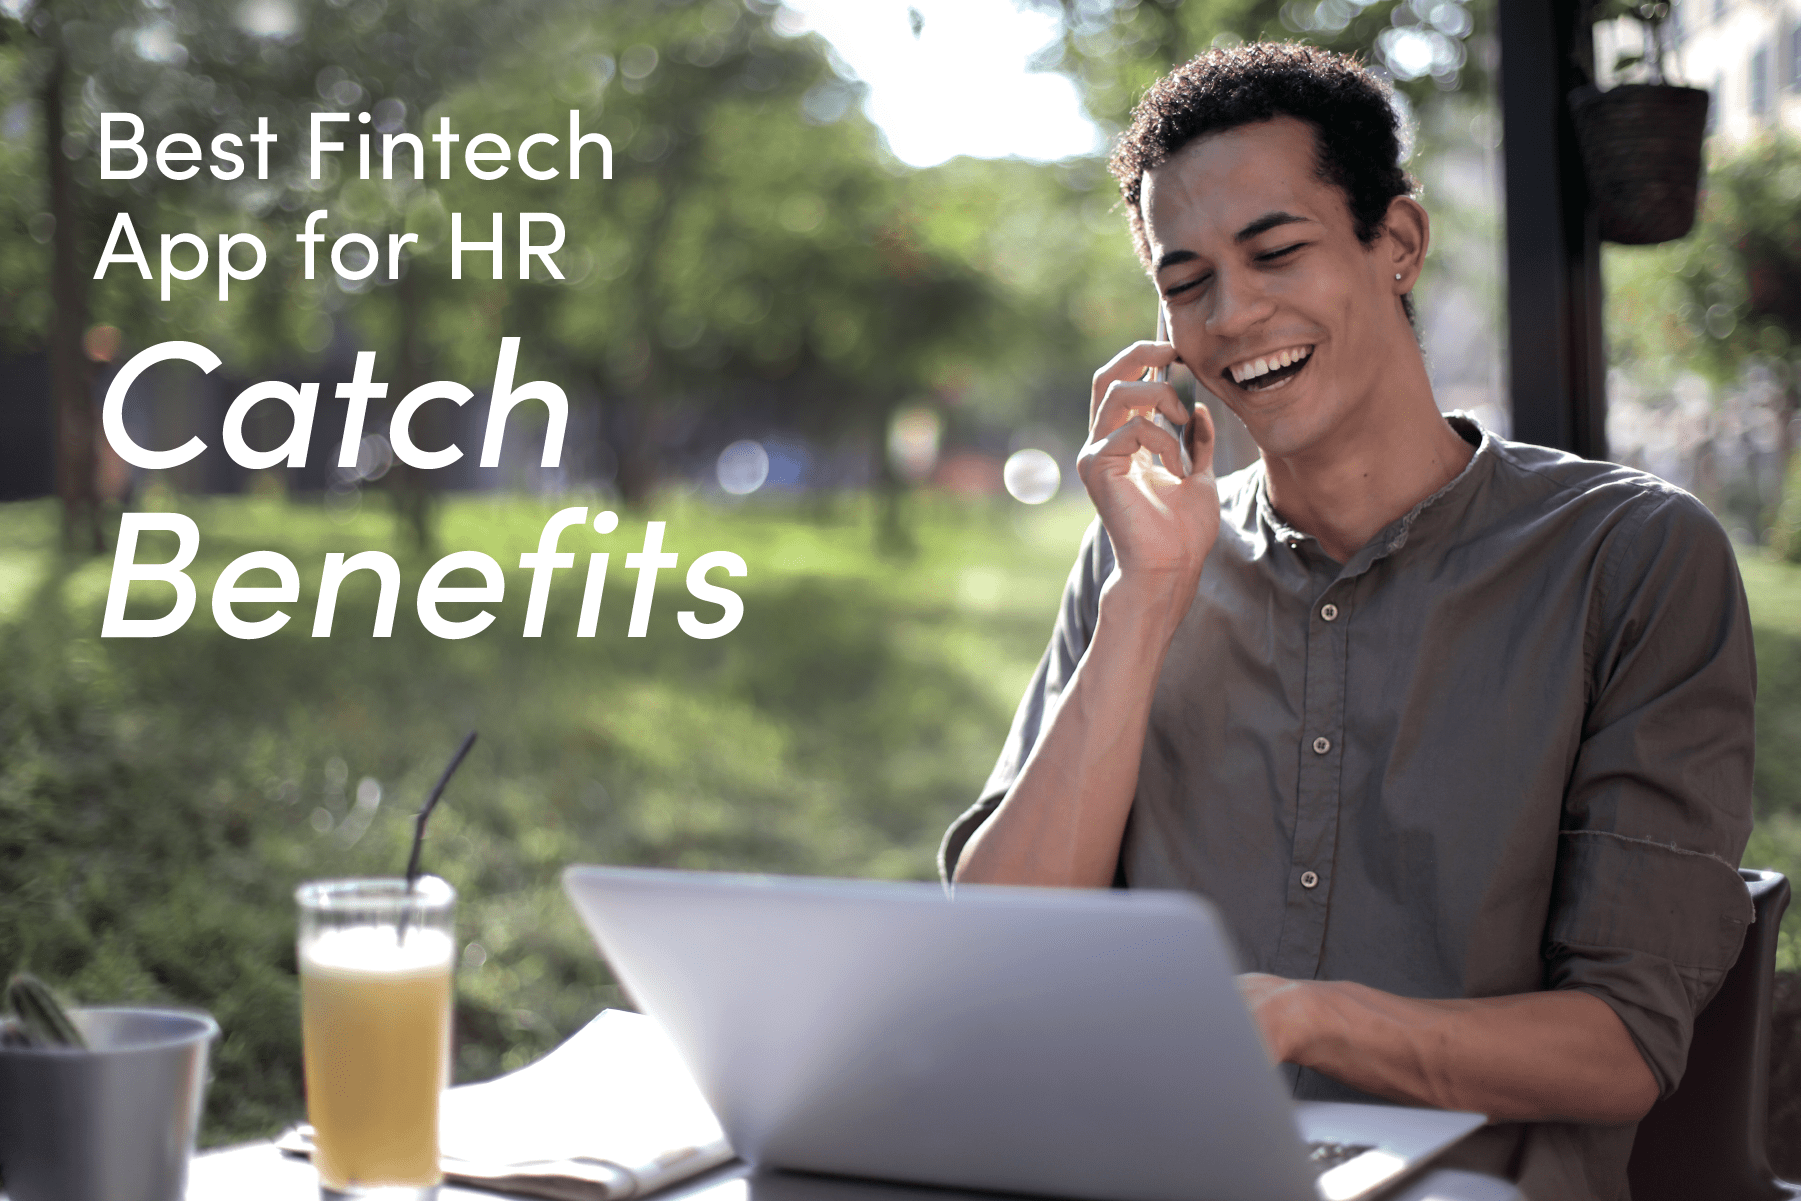 Best Fintech App for HR Catch Benefits